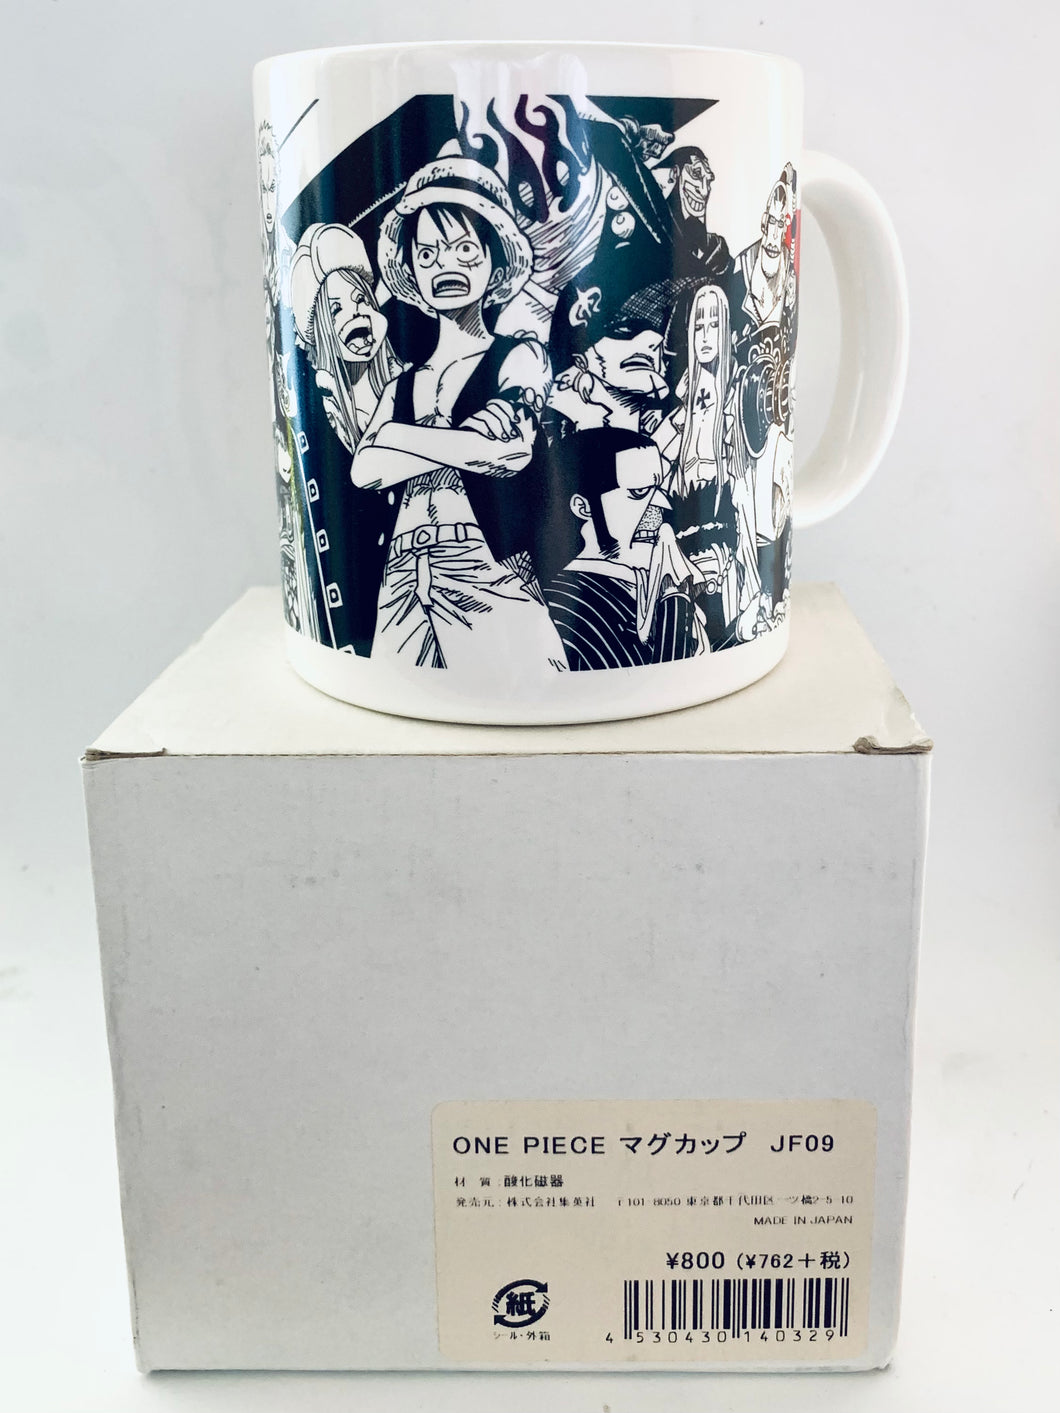 One Piece - Shabaody Archipielago Edition - Mug Cup - Jump Festa 2009